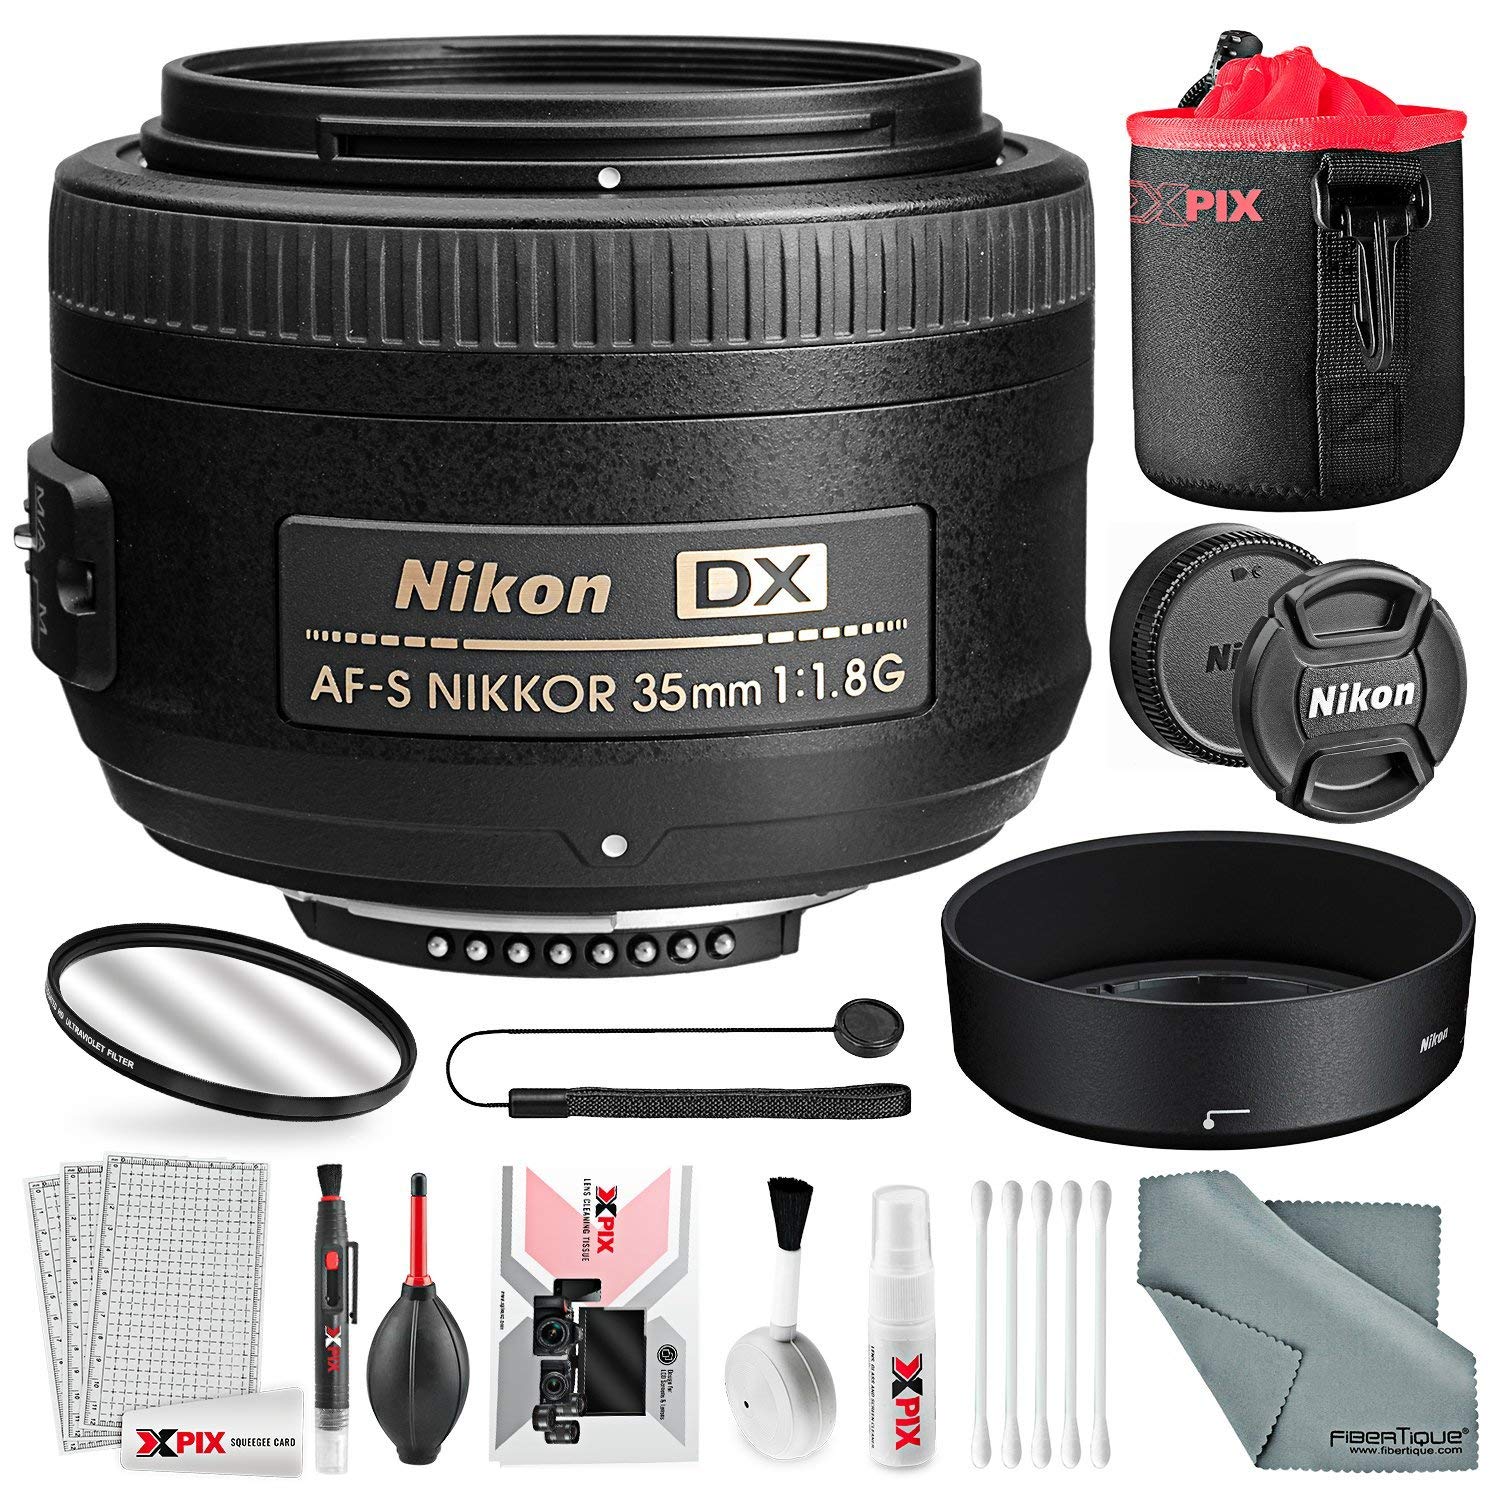 Nikon D3400 Lens Compatibility Chart